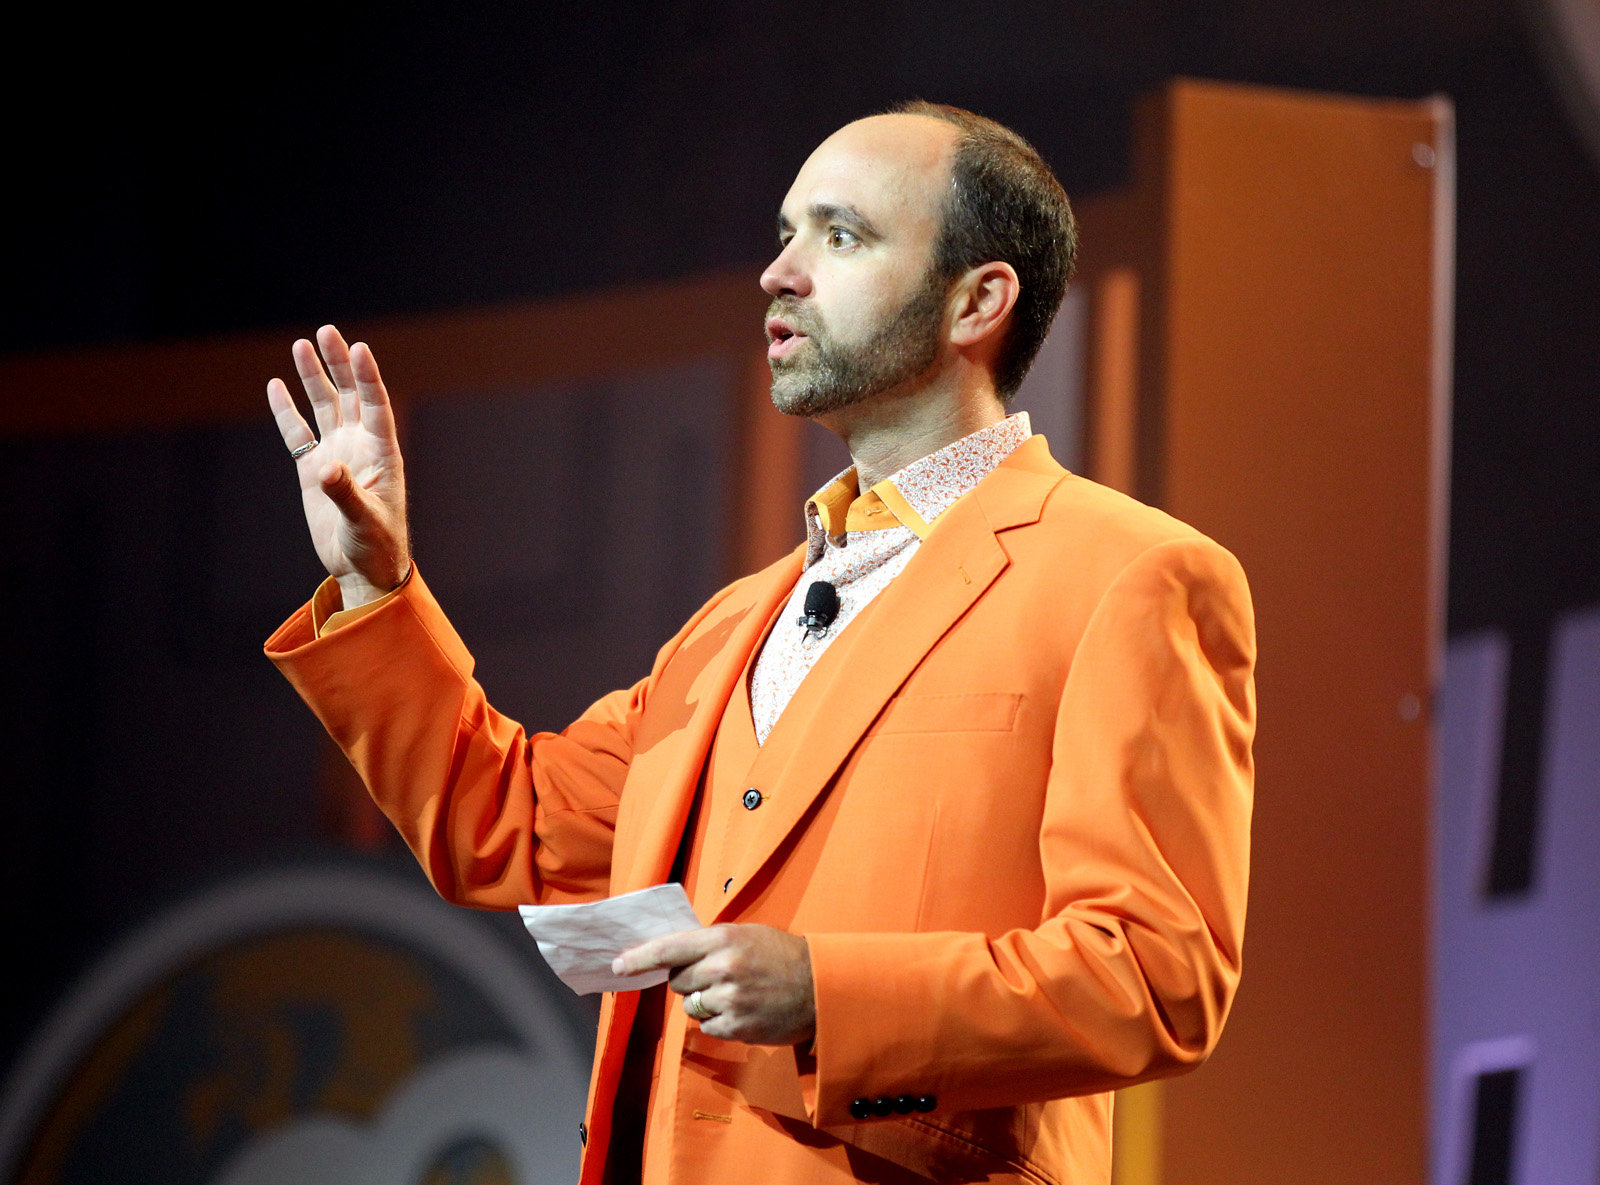 Joe Pulizzi wearing an orange coat